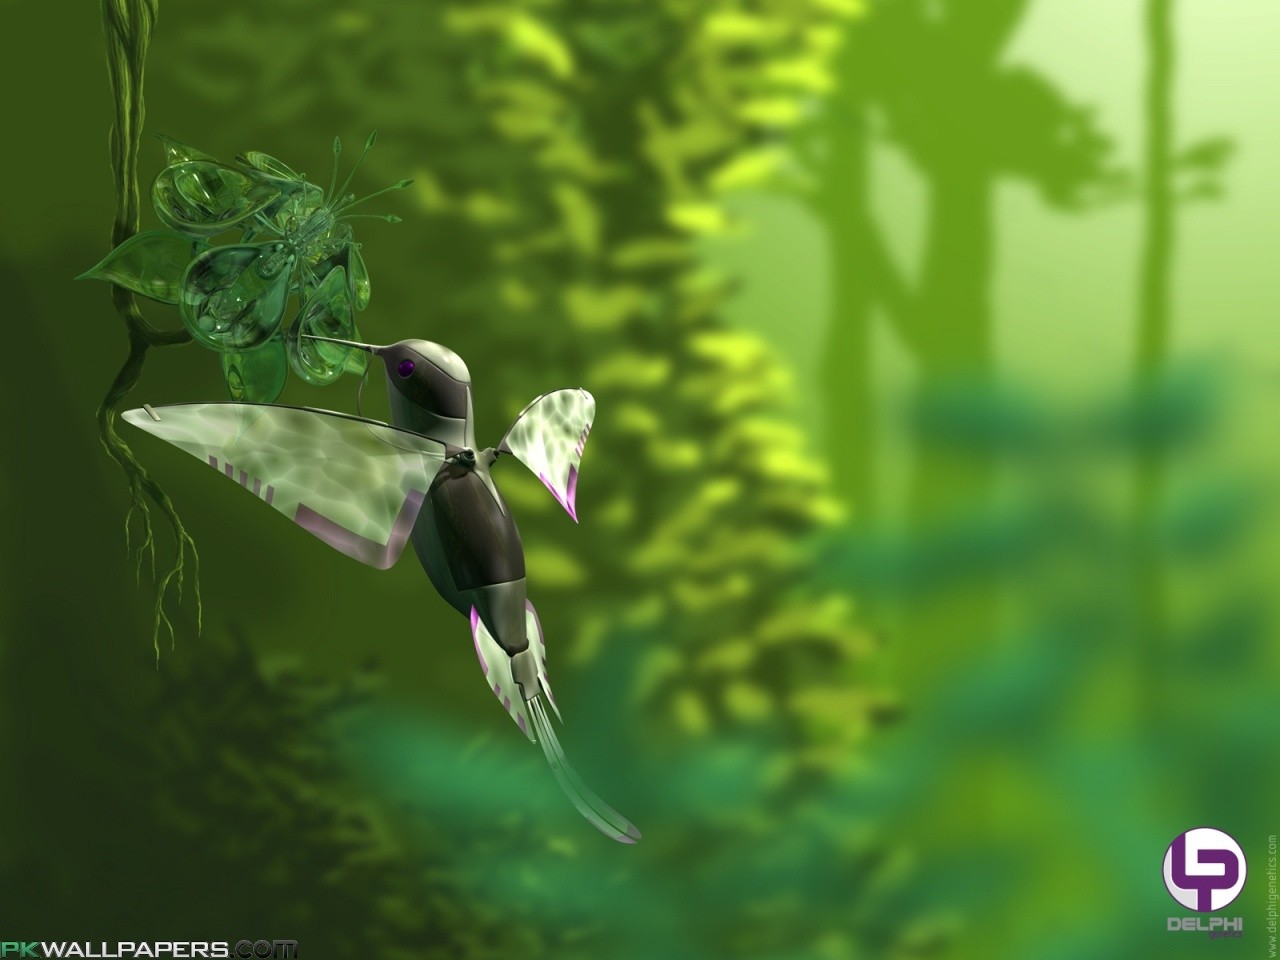 colibri (bird), Grass, Trees, CGI, Digital Art, Flying, Depth Of Field Wallpaper